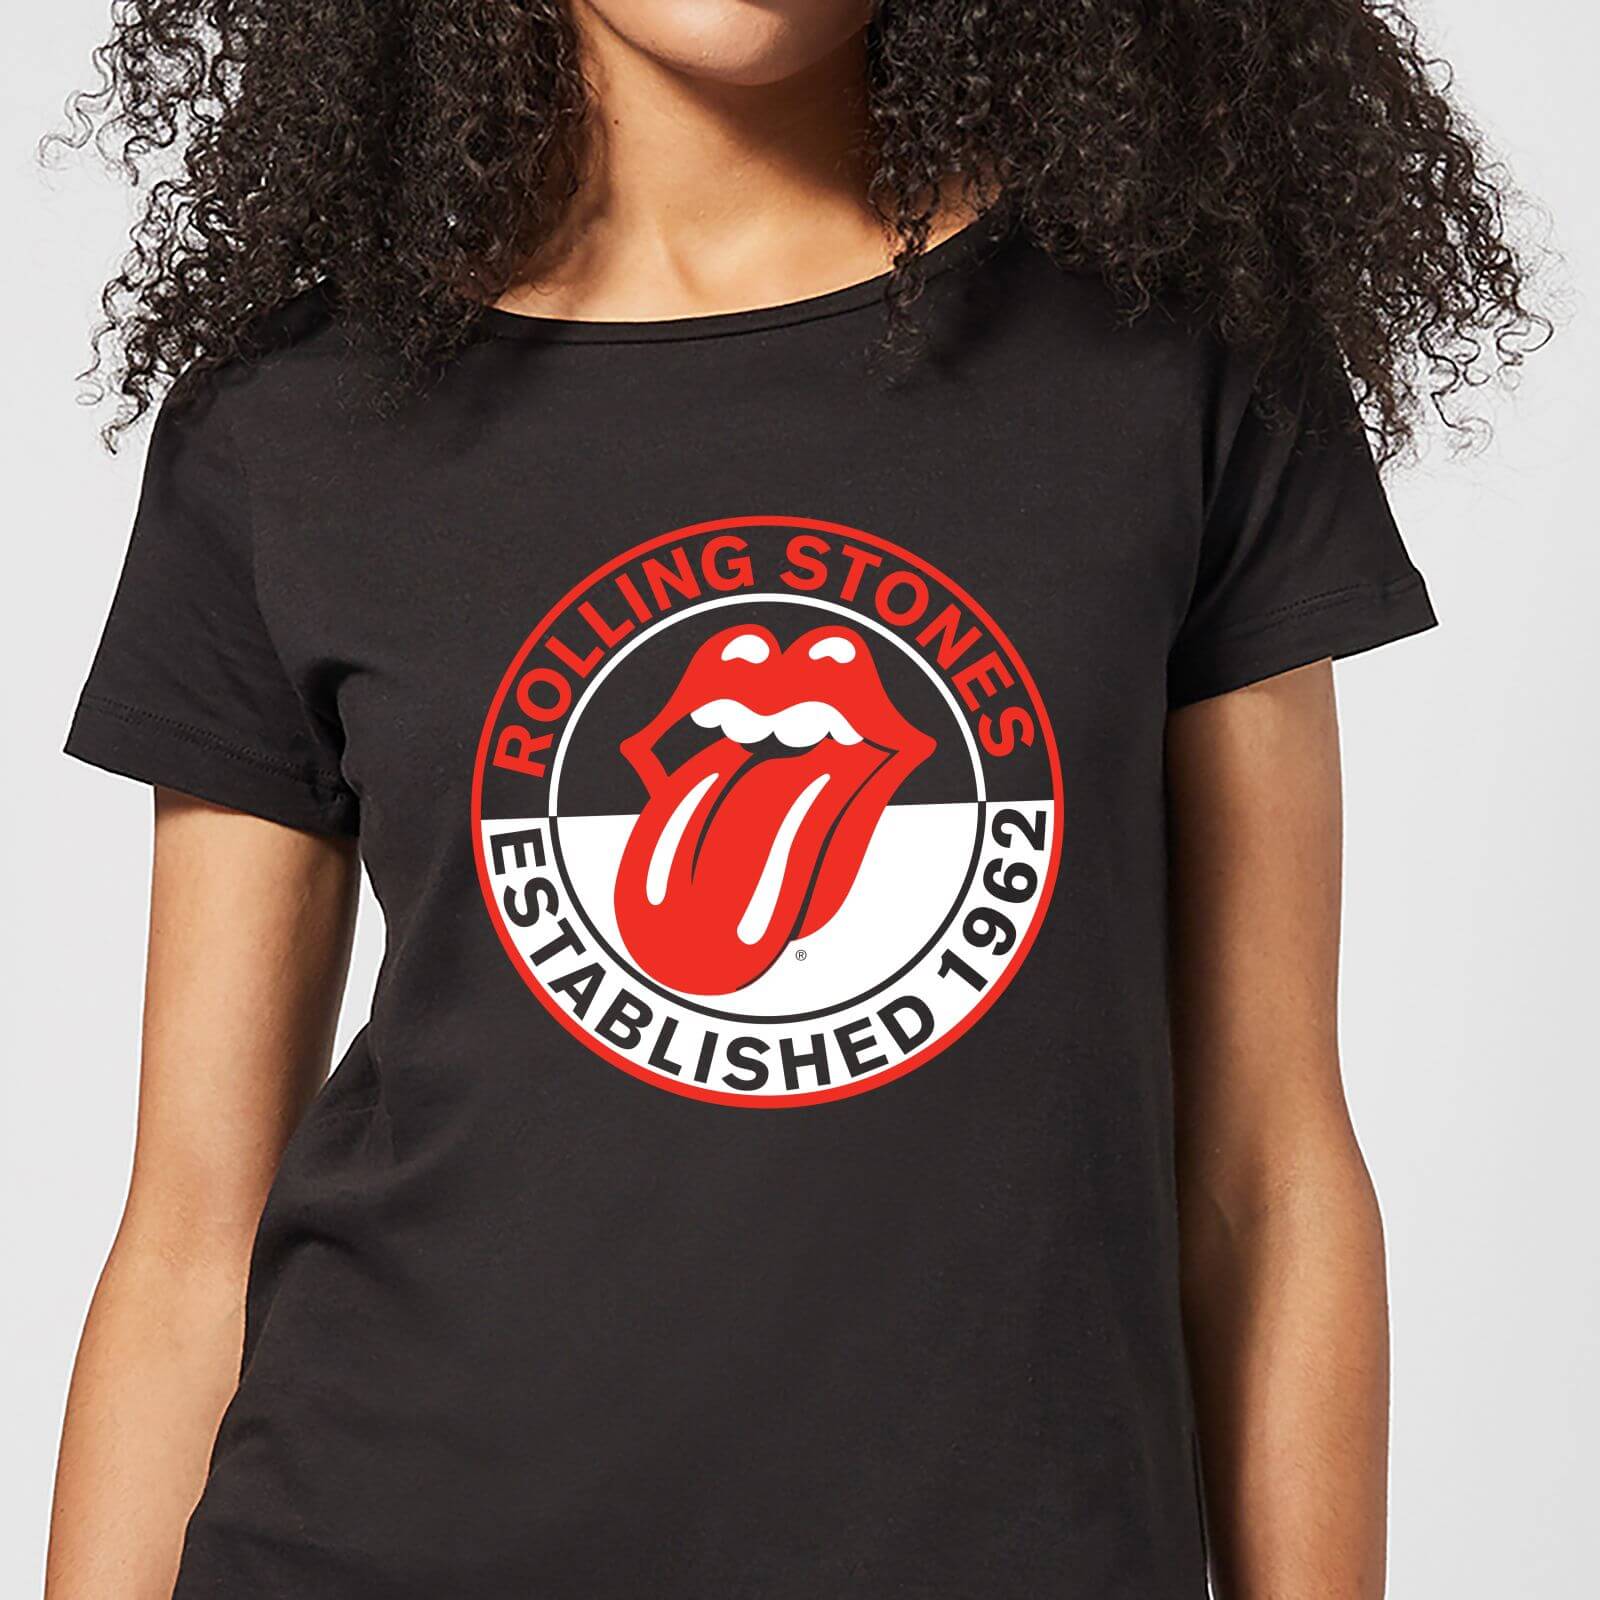 Rolling Stones Est 62 Women's T-Shirt - Black - XL - Black